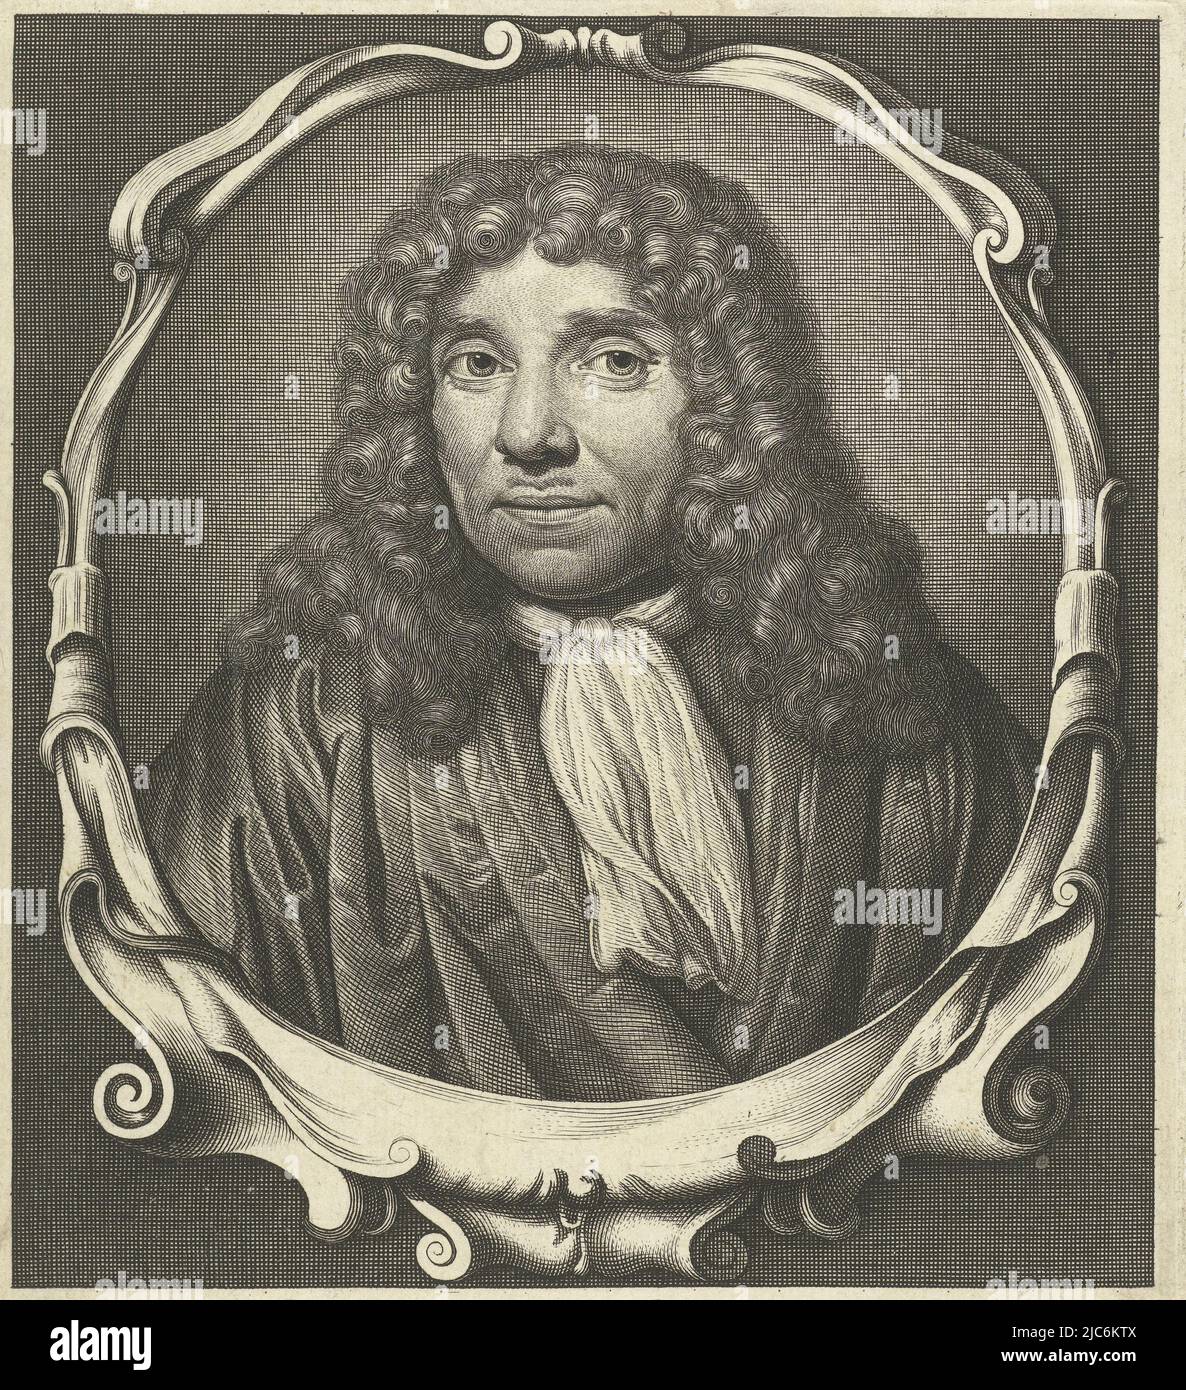 Portrait of Antonie van Leeuwenhoek, bust in oval frame with lobe ornament, Portrait of Antonie van Leeuwenhoek, print maker: Abraham de Blois, after: Jan Verkolje (I), Amsterdam, 1679 - 1717, paper, engraving, h 158 mm × w 143 mm Stock Photo